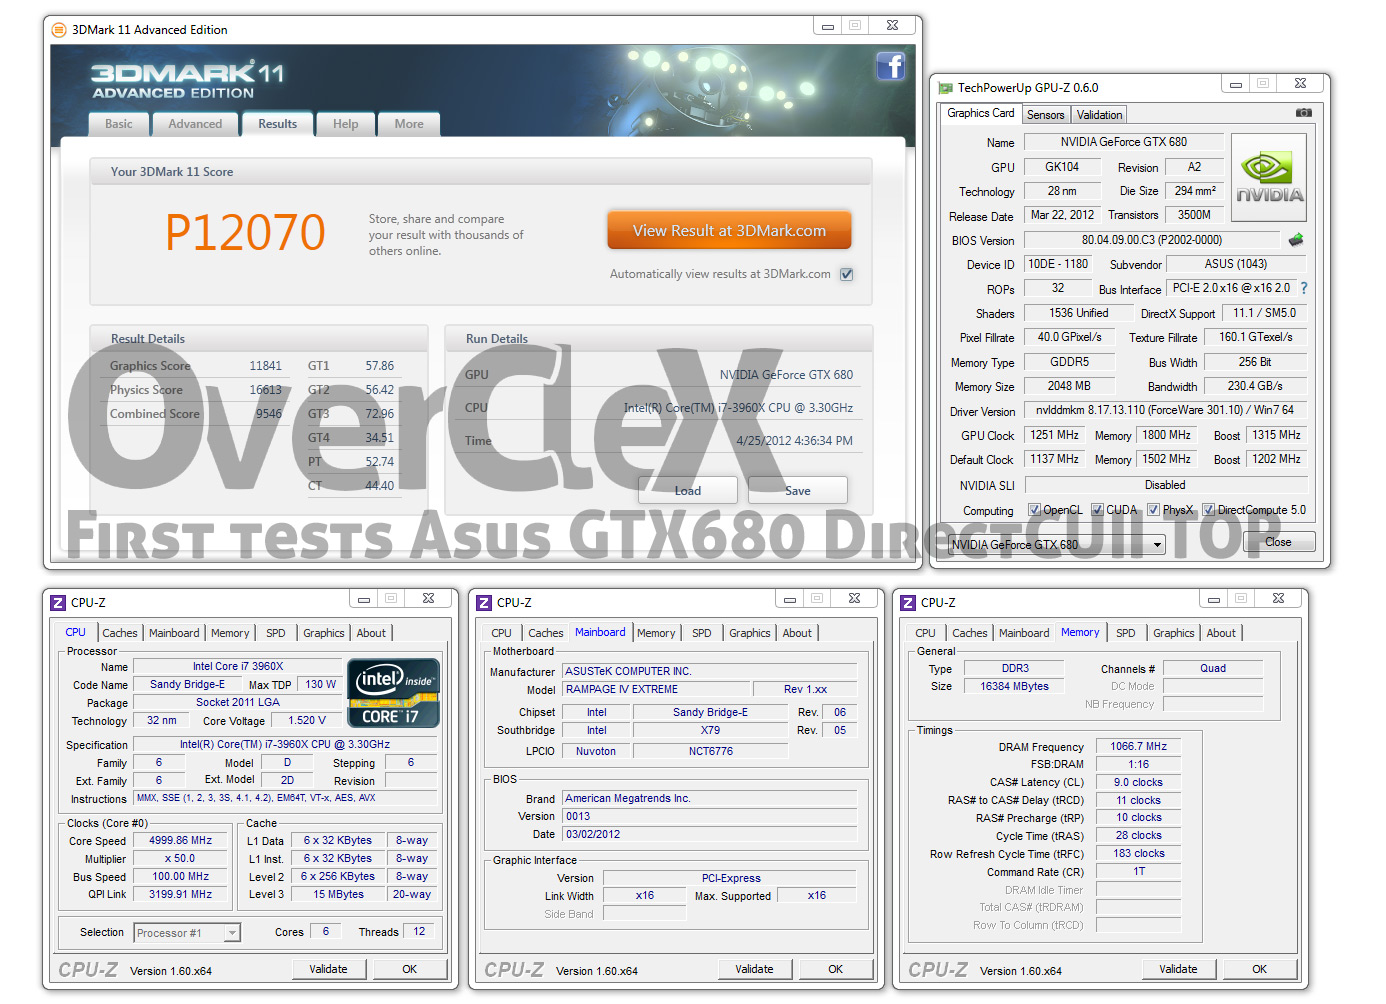 http://www.overclex.net/wp-content/uploads/2012/04/680DC2_max1341_3D11_.jpg